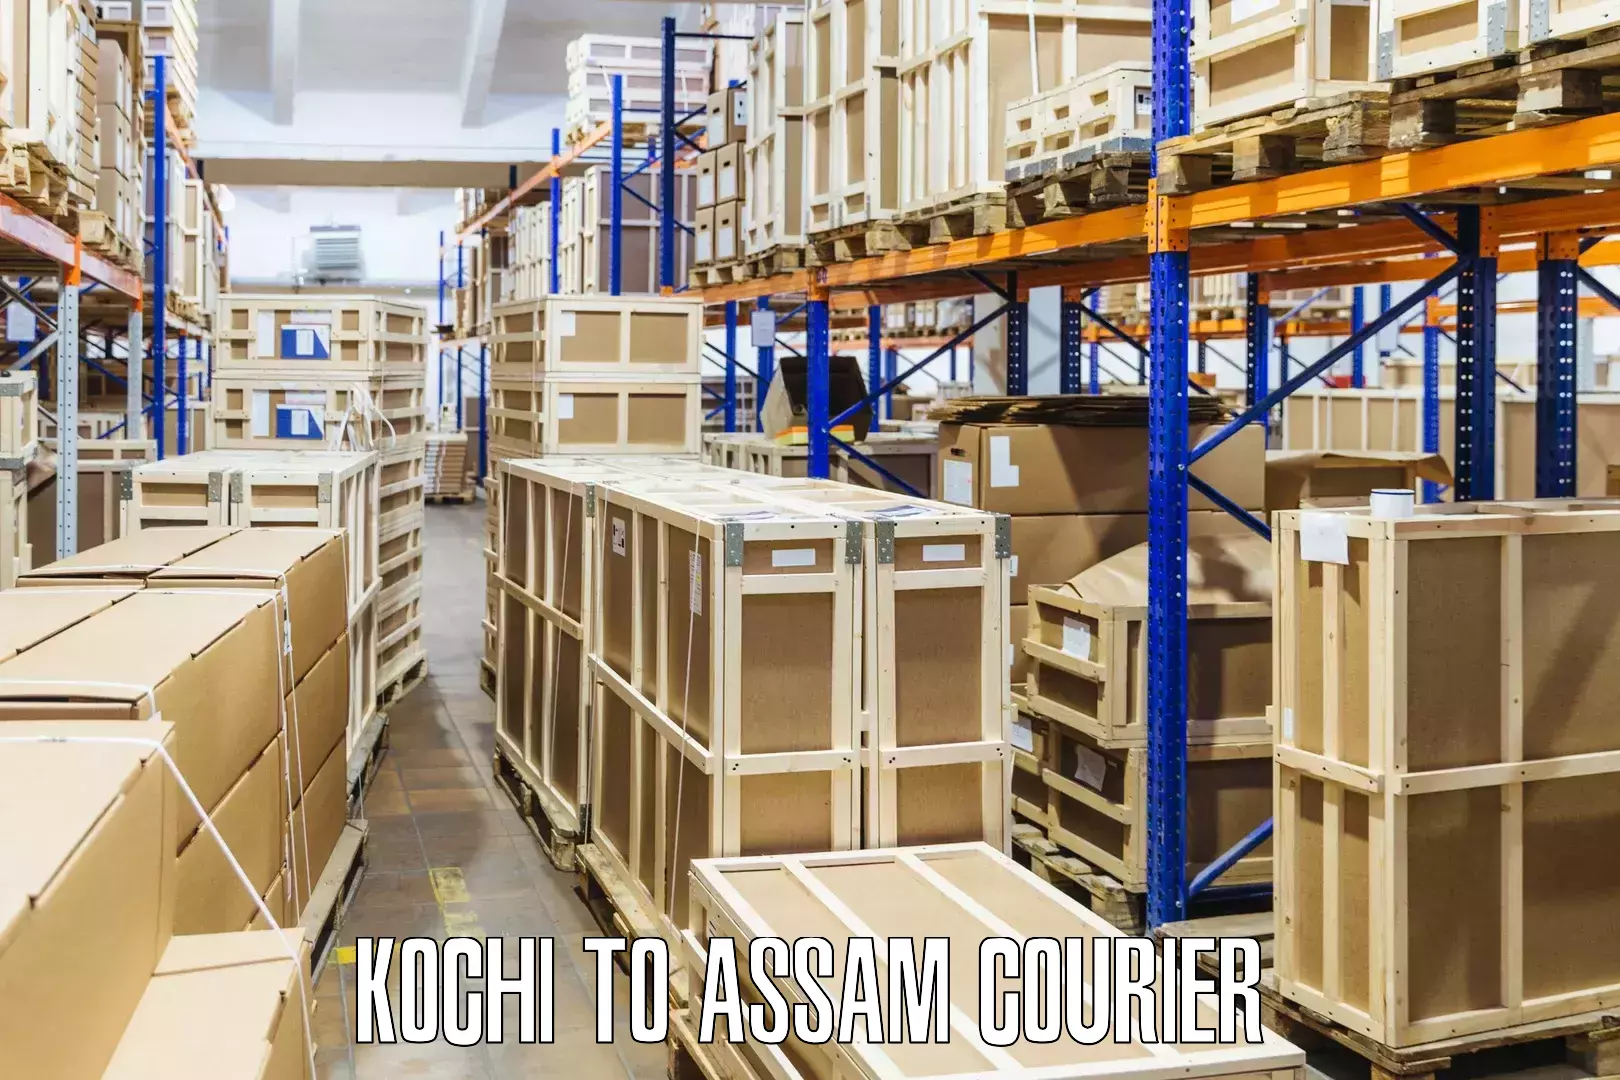 Nationwide shipping capabilities Kochi to Diphu